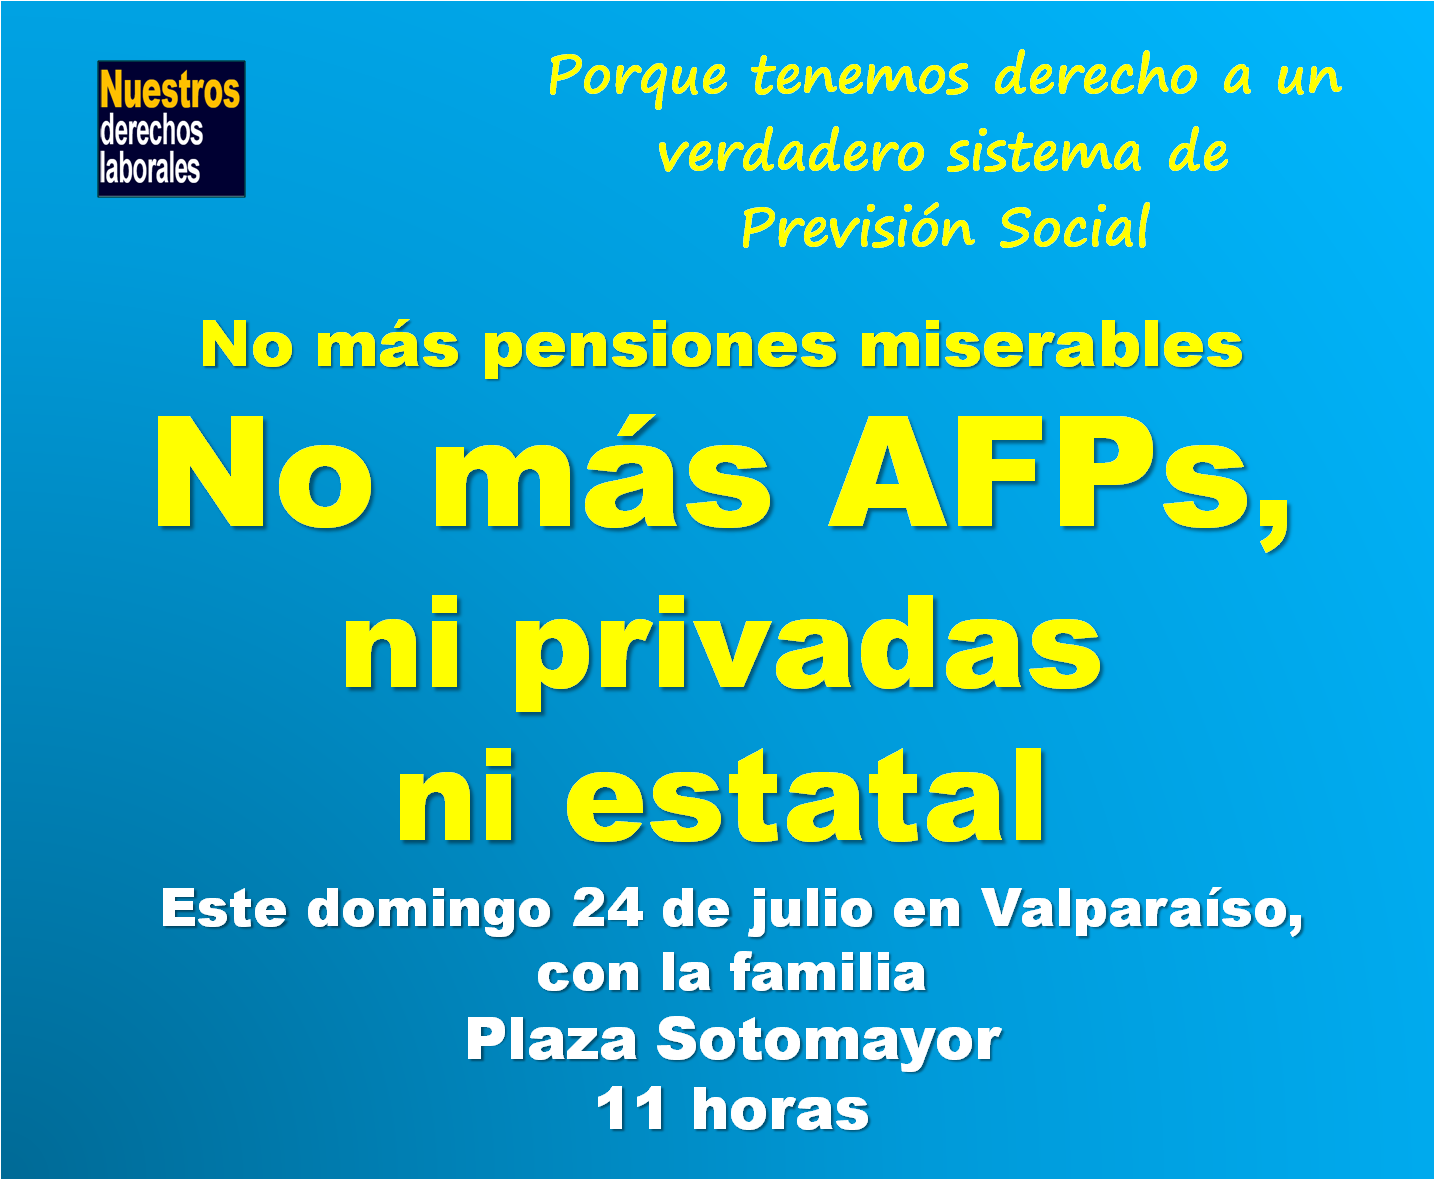 No más AFPs, ni privadas ni estatal. Valparaíso, domingo 24 de julio, 11 horas.